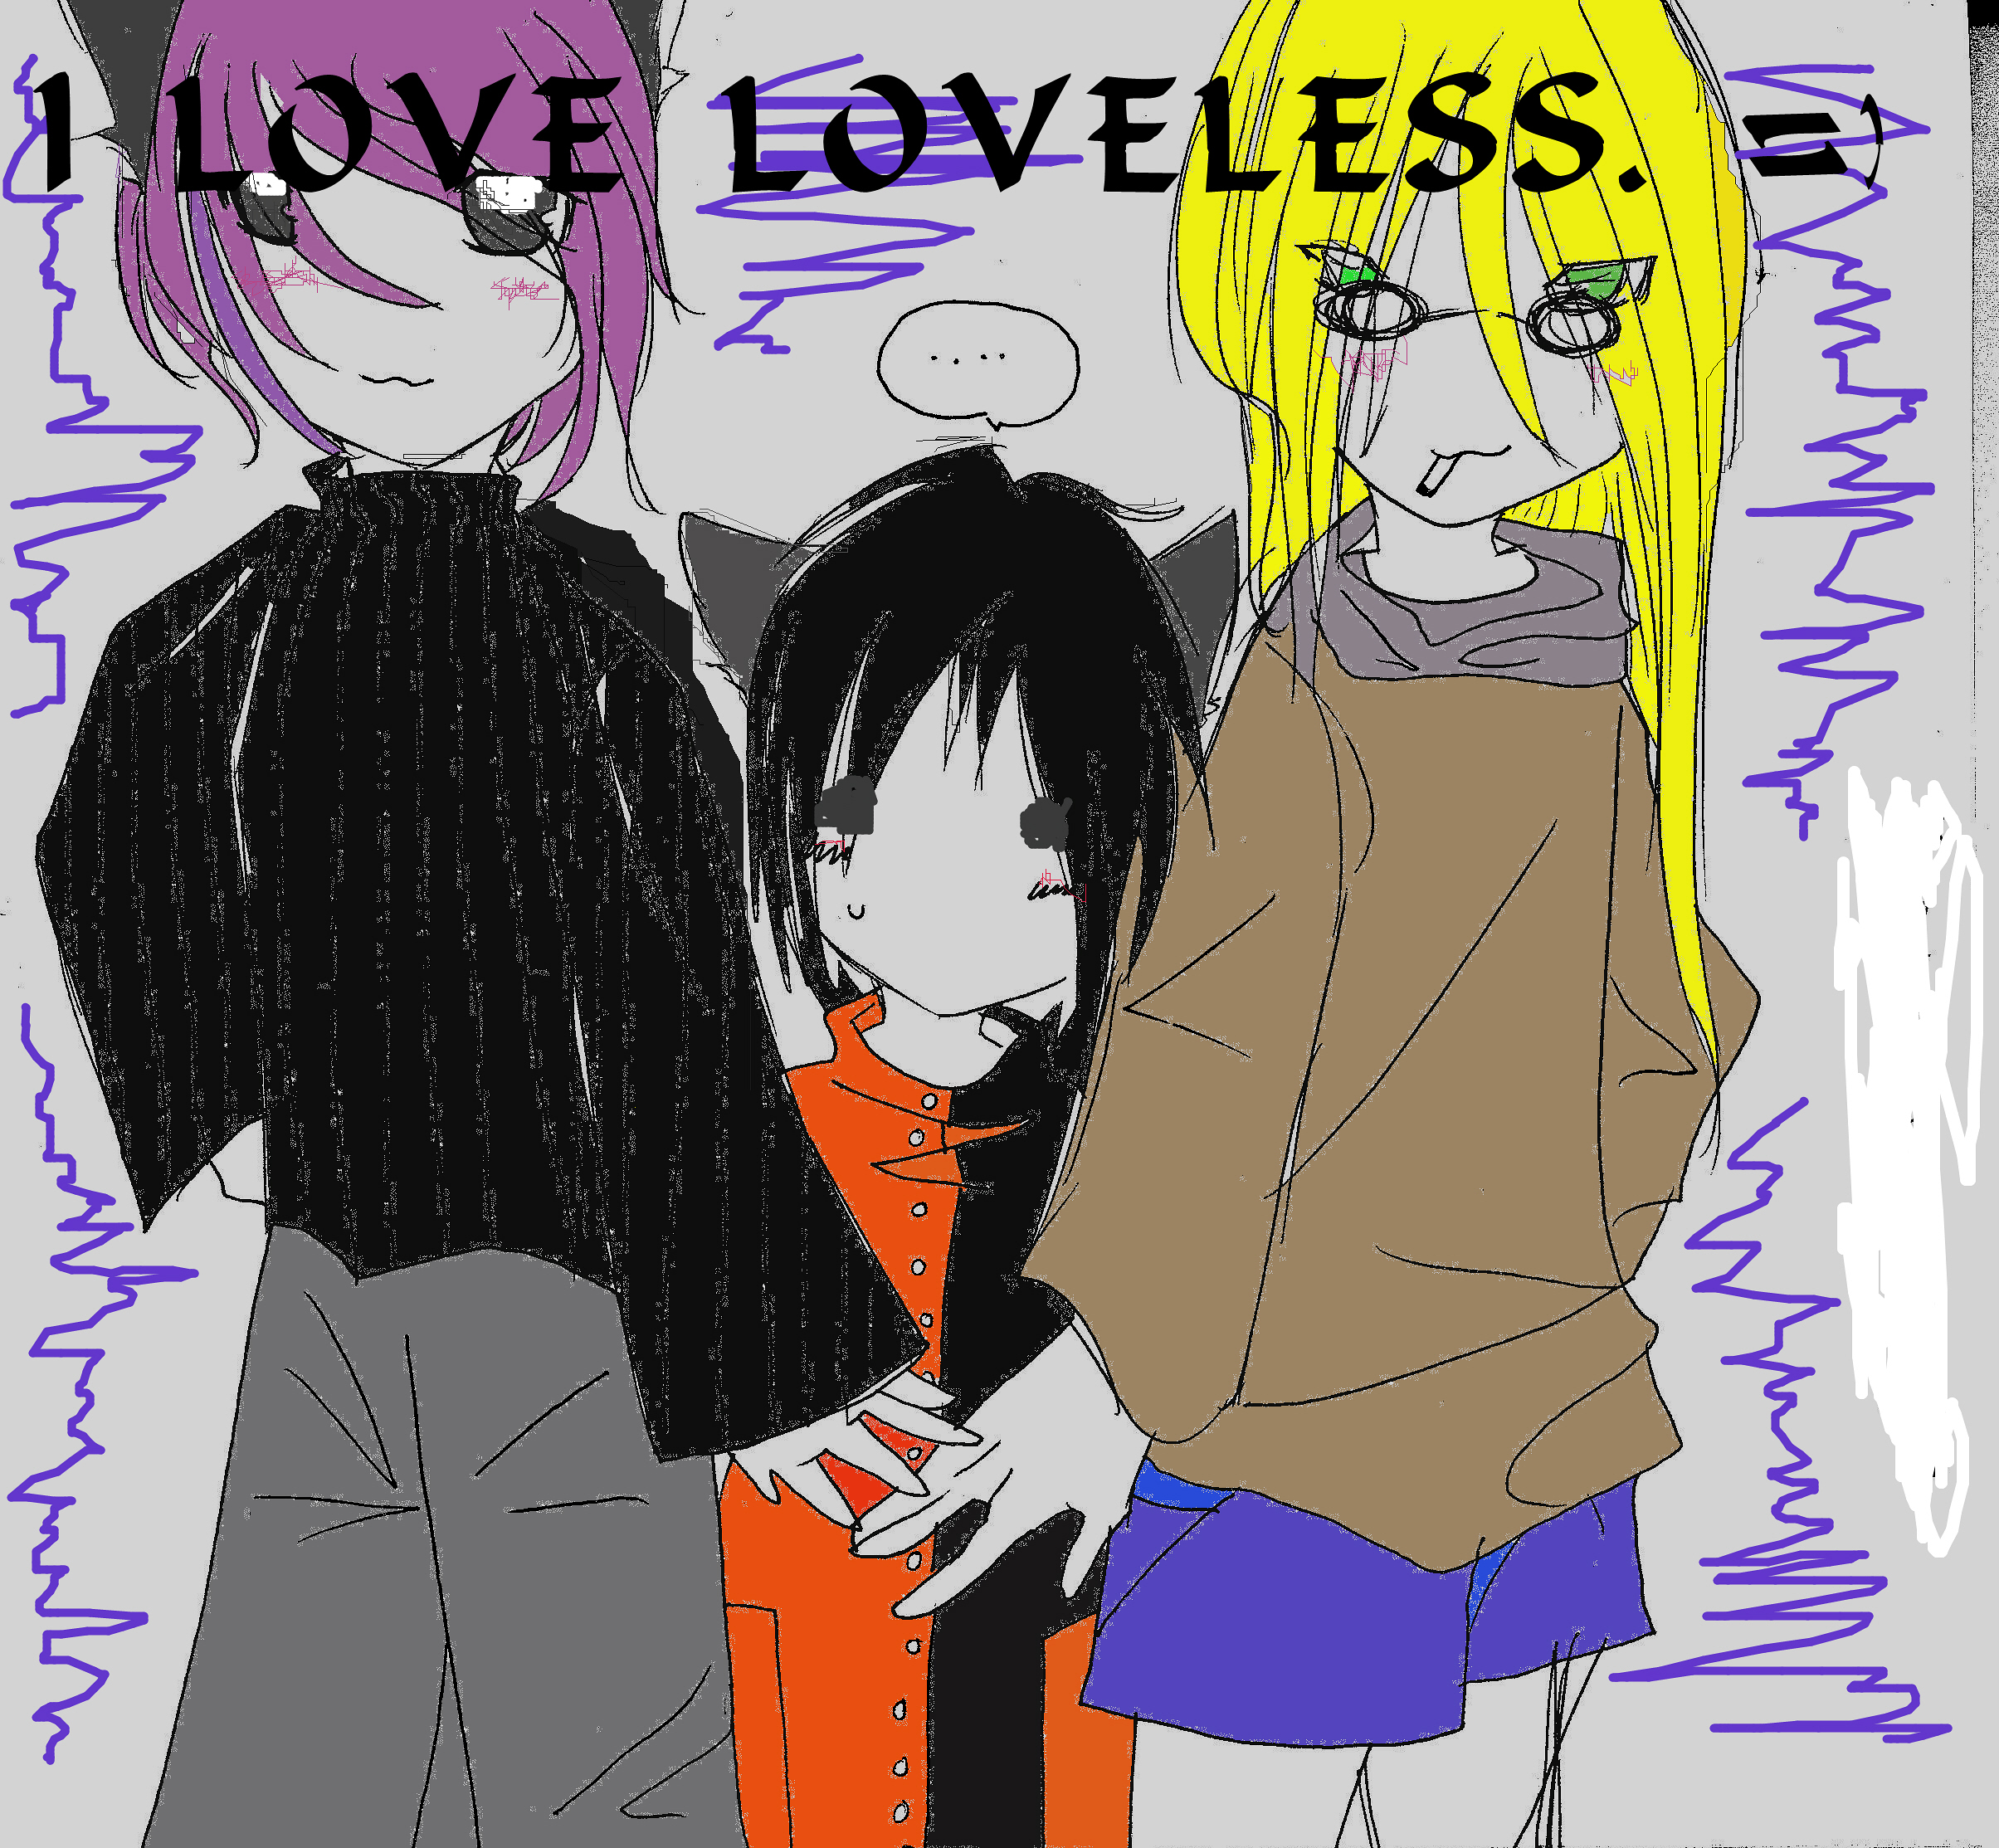 I love Loveless by luckylace222